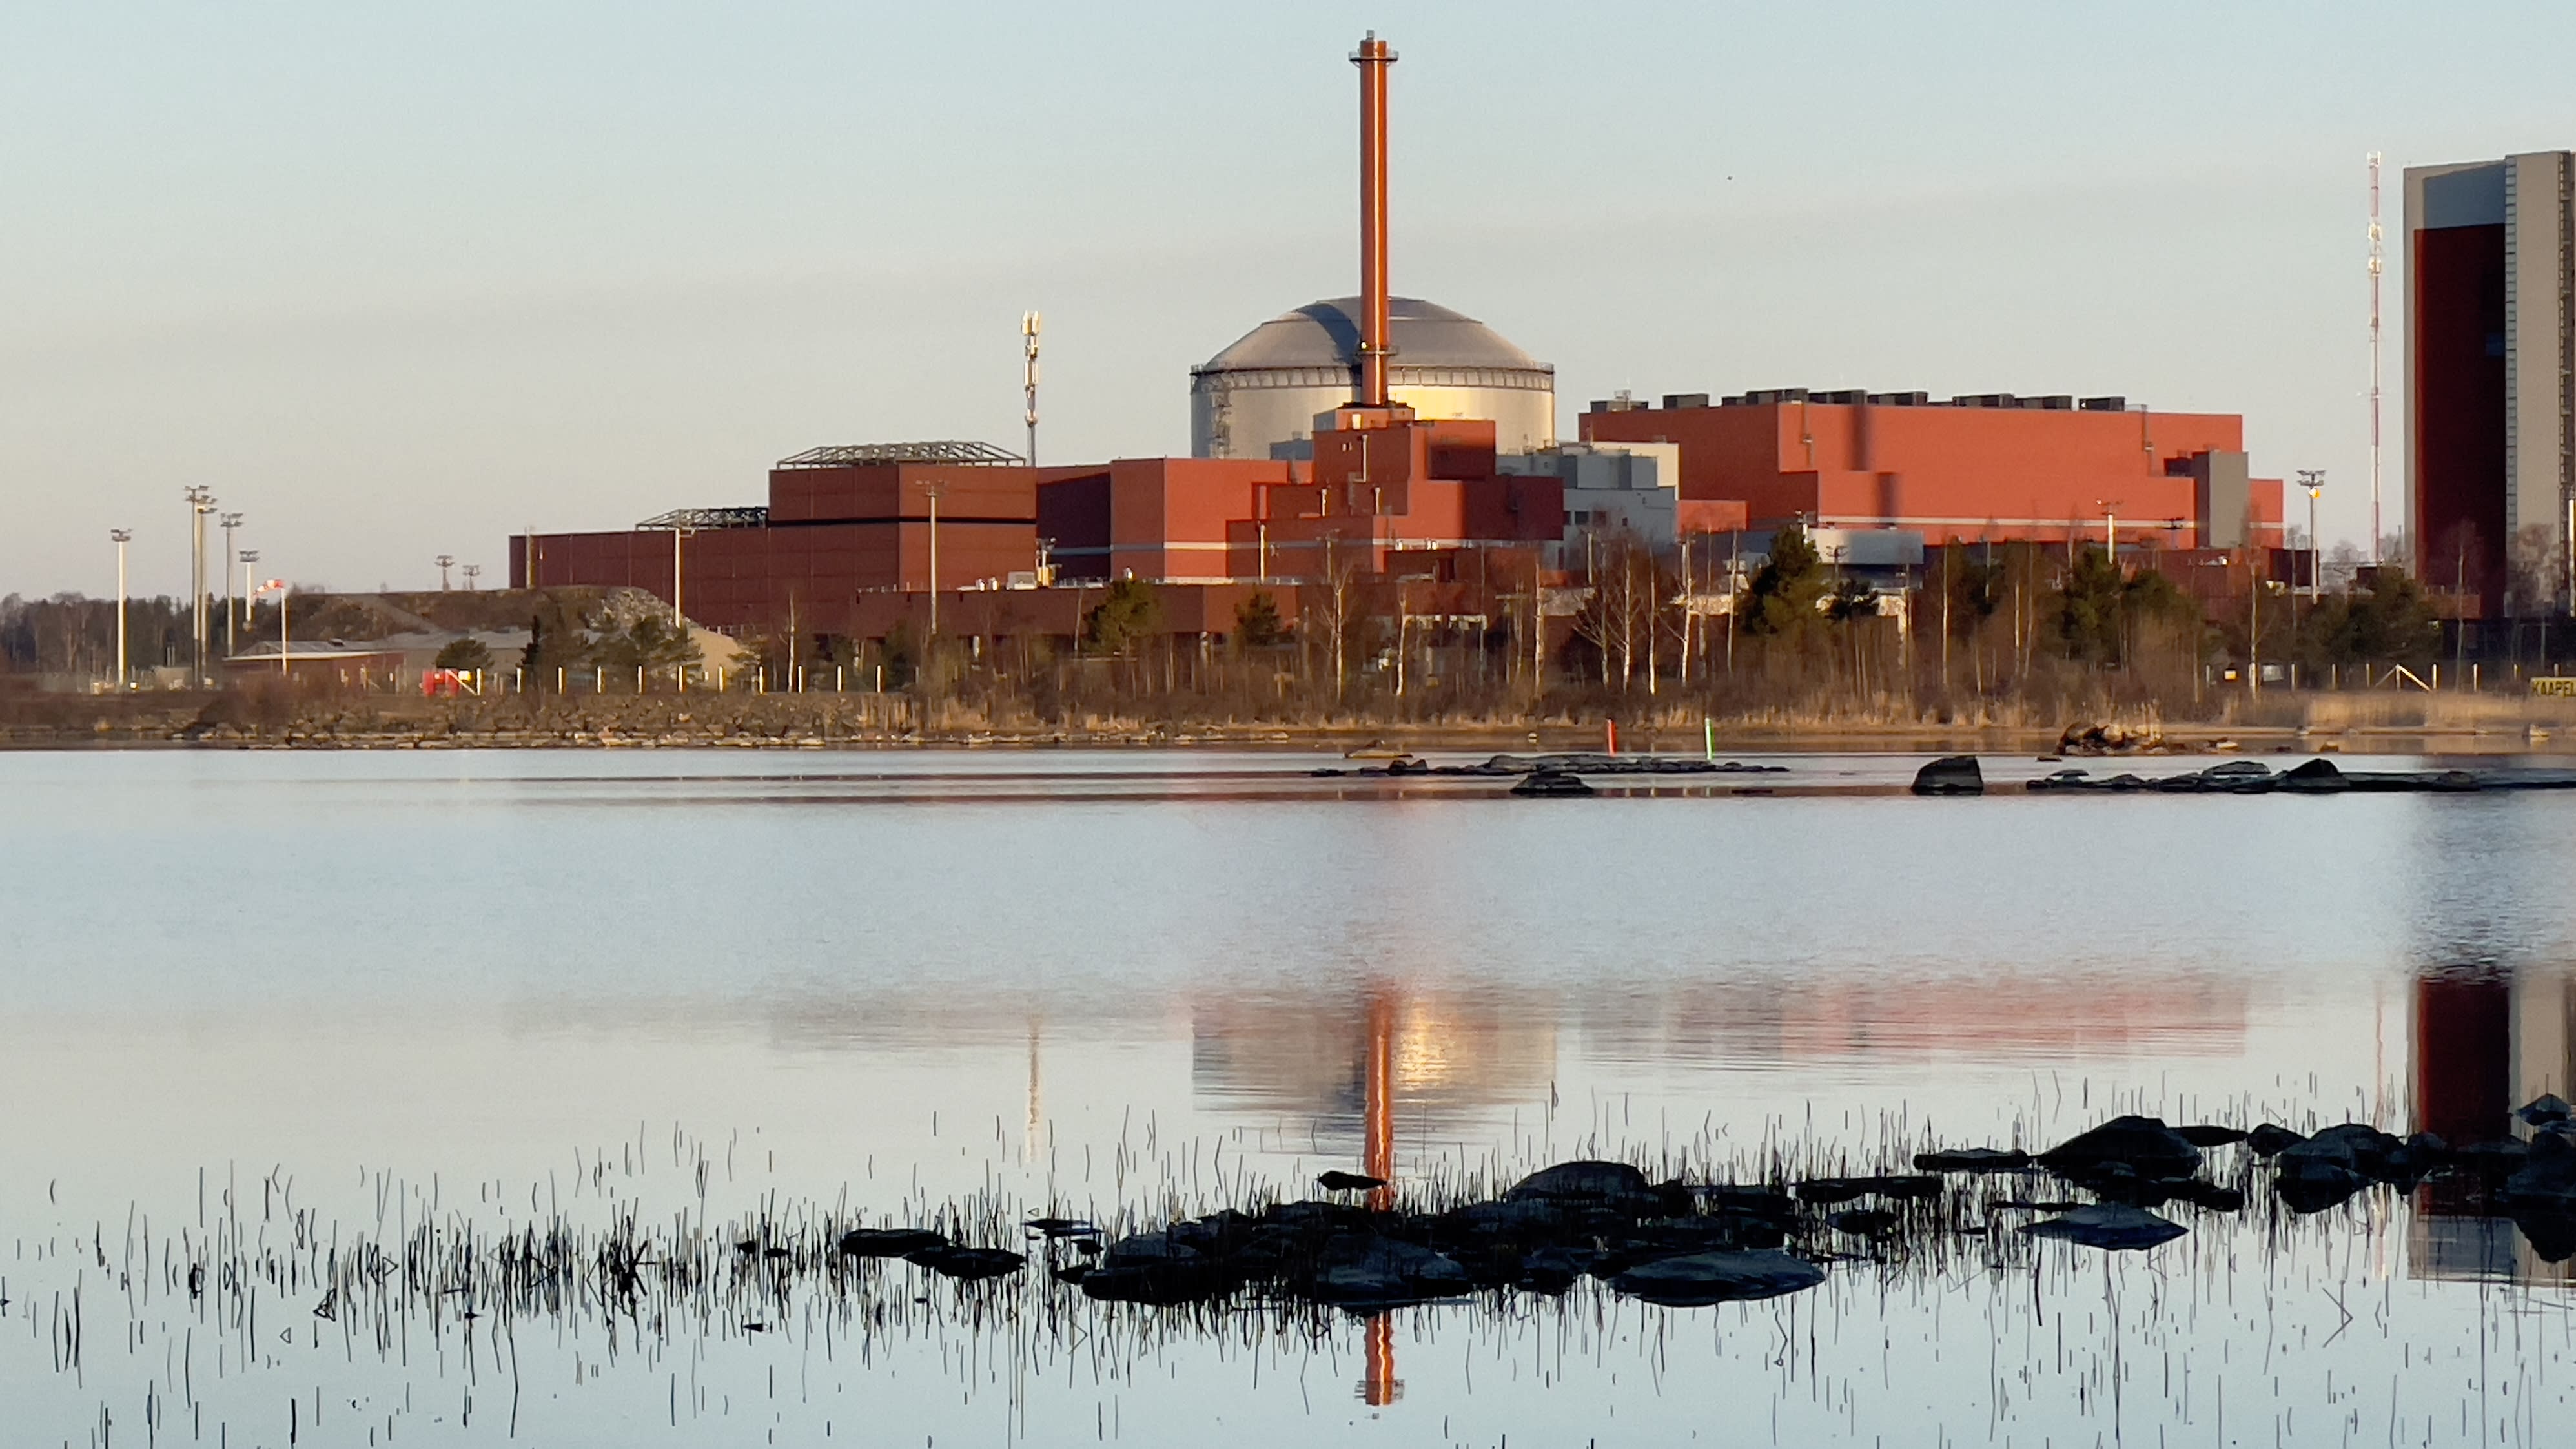 Finnlands neuestes Atomkraftwerk erhitzt das Meer und schadet der Natur